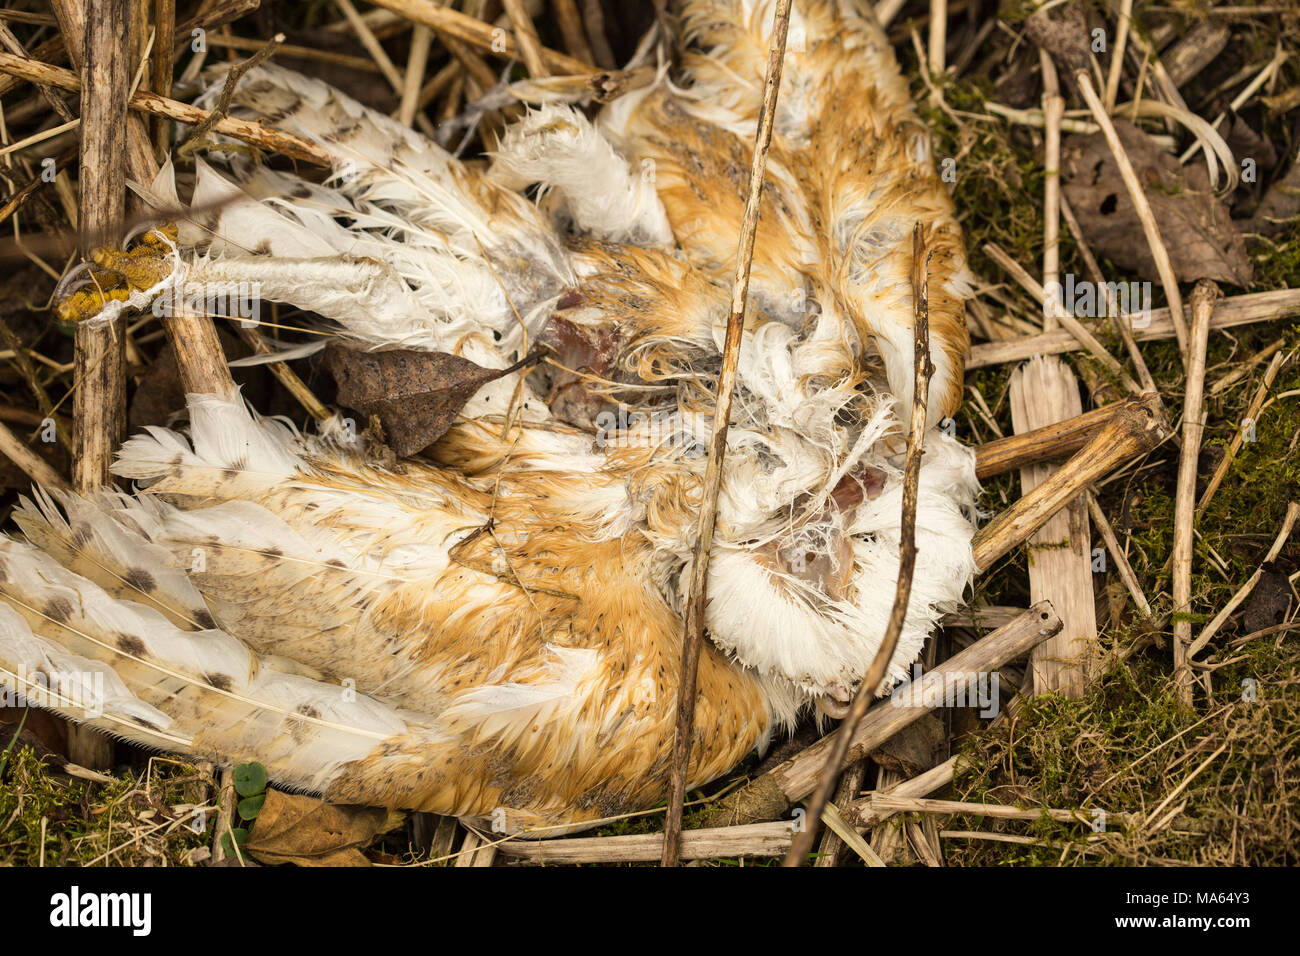 Morto il barbagianni, parzialmente decomposto in paglia e altri detriti. Forse avvelenata da esca di roditore. Foto Stock